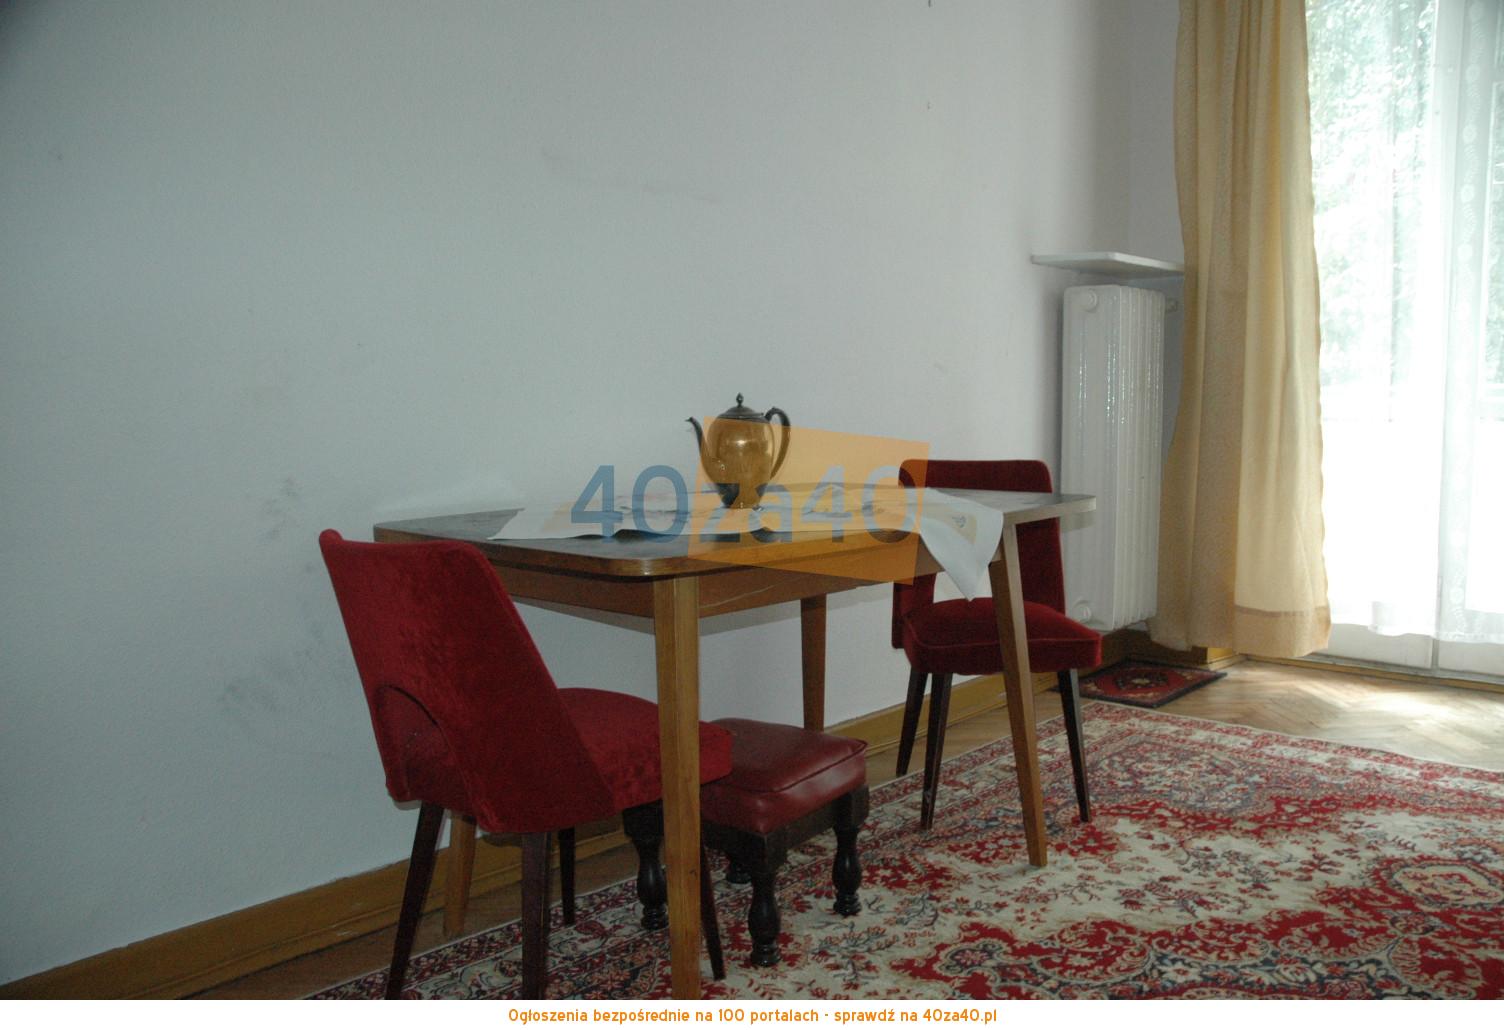 Mieszkanie do wynajęcia, pokoje: 2, cena: 950,00 PLN, Łódź, kontakt: 502 271 850